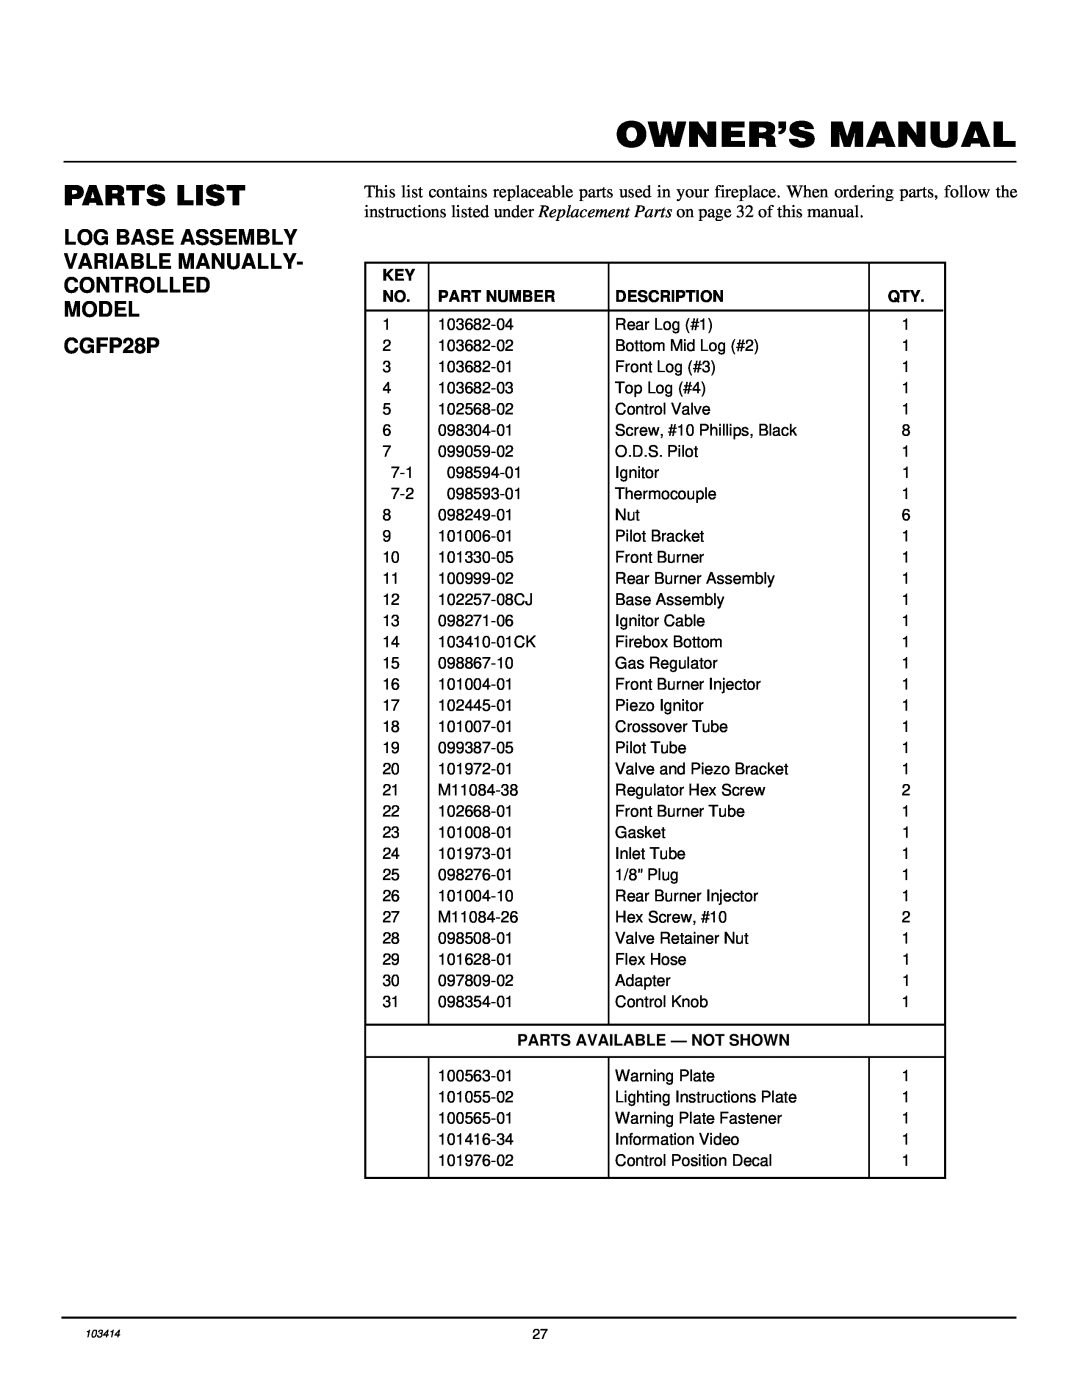 Desa CGFP28PT installation manual Parts List, Part Number, Description, Parts Available - Not Shown 